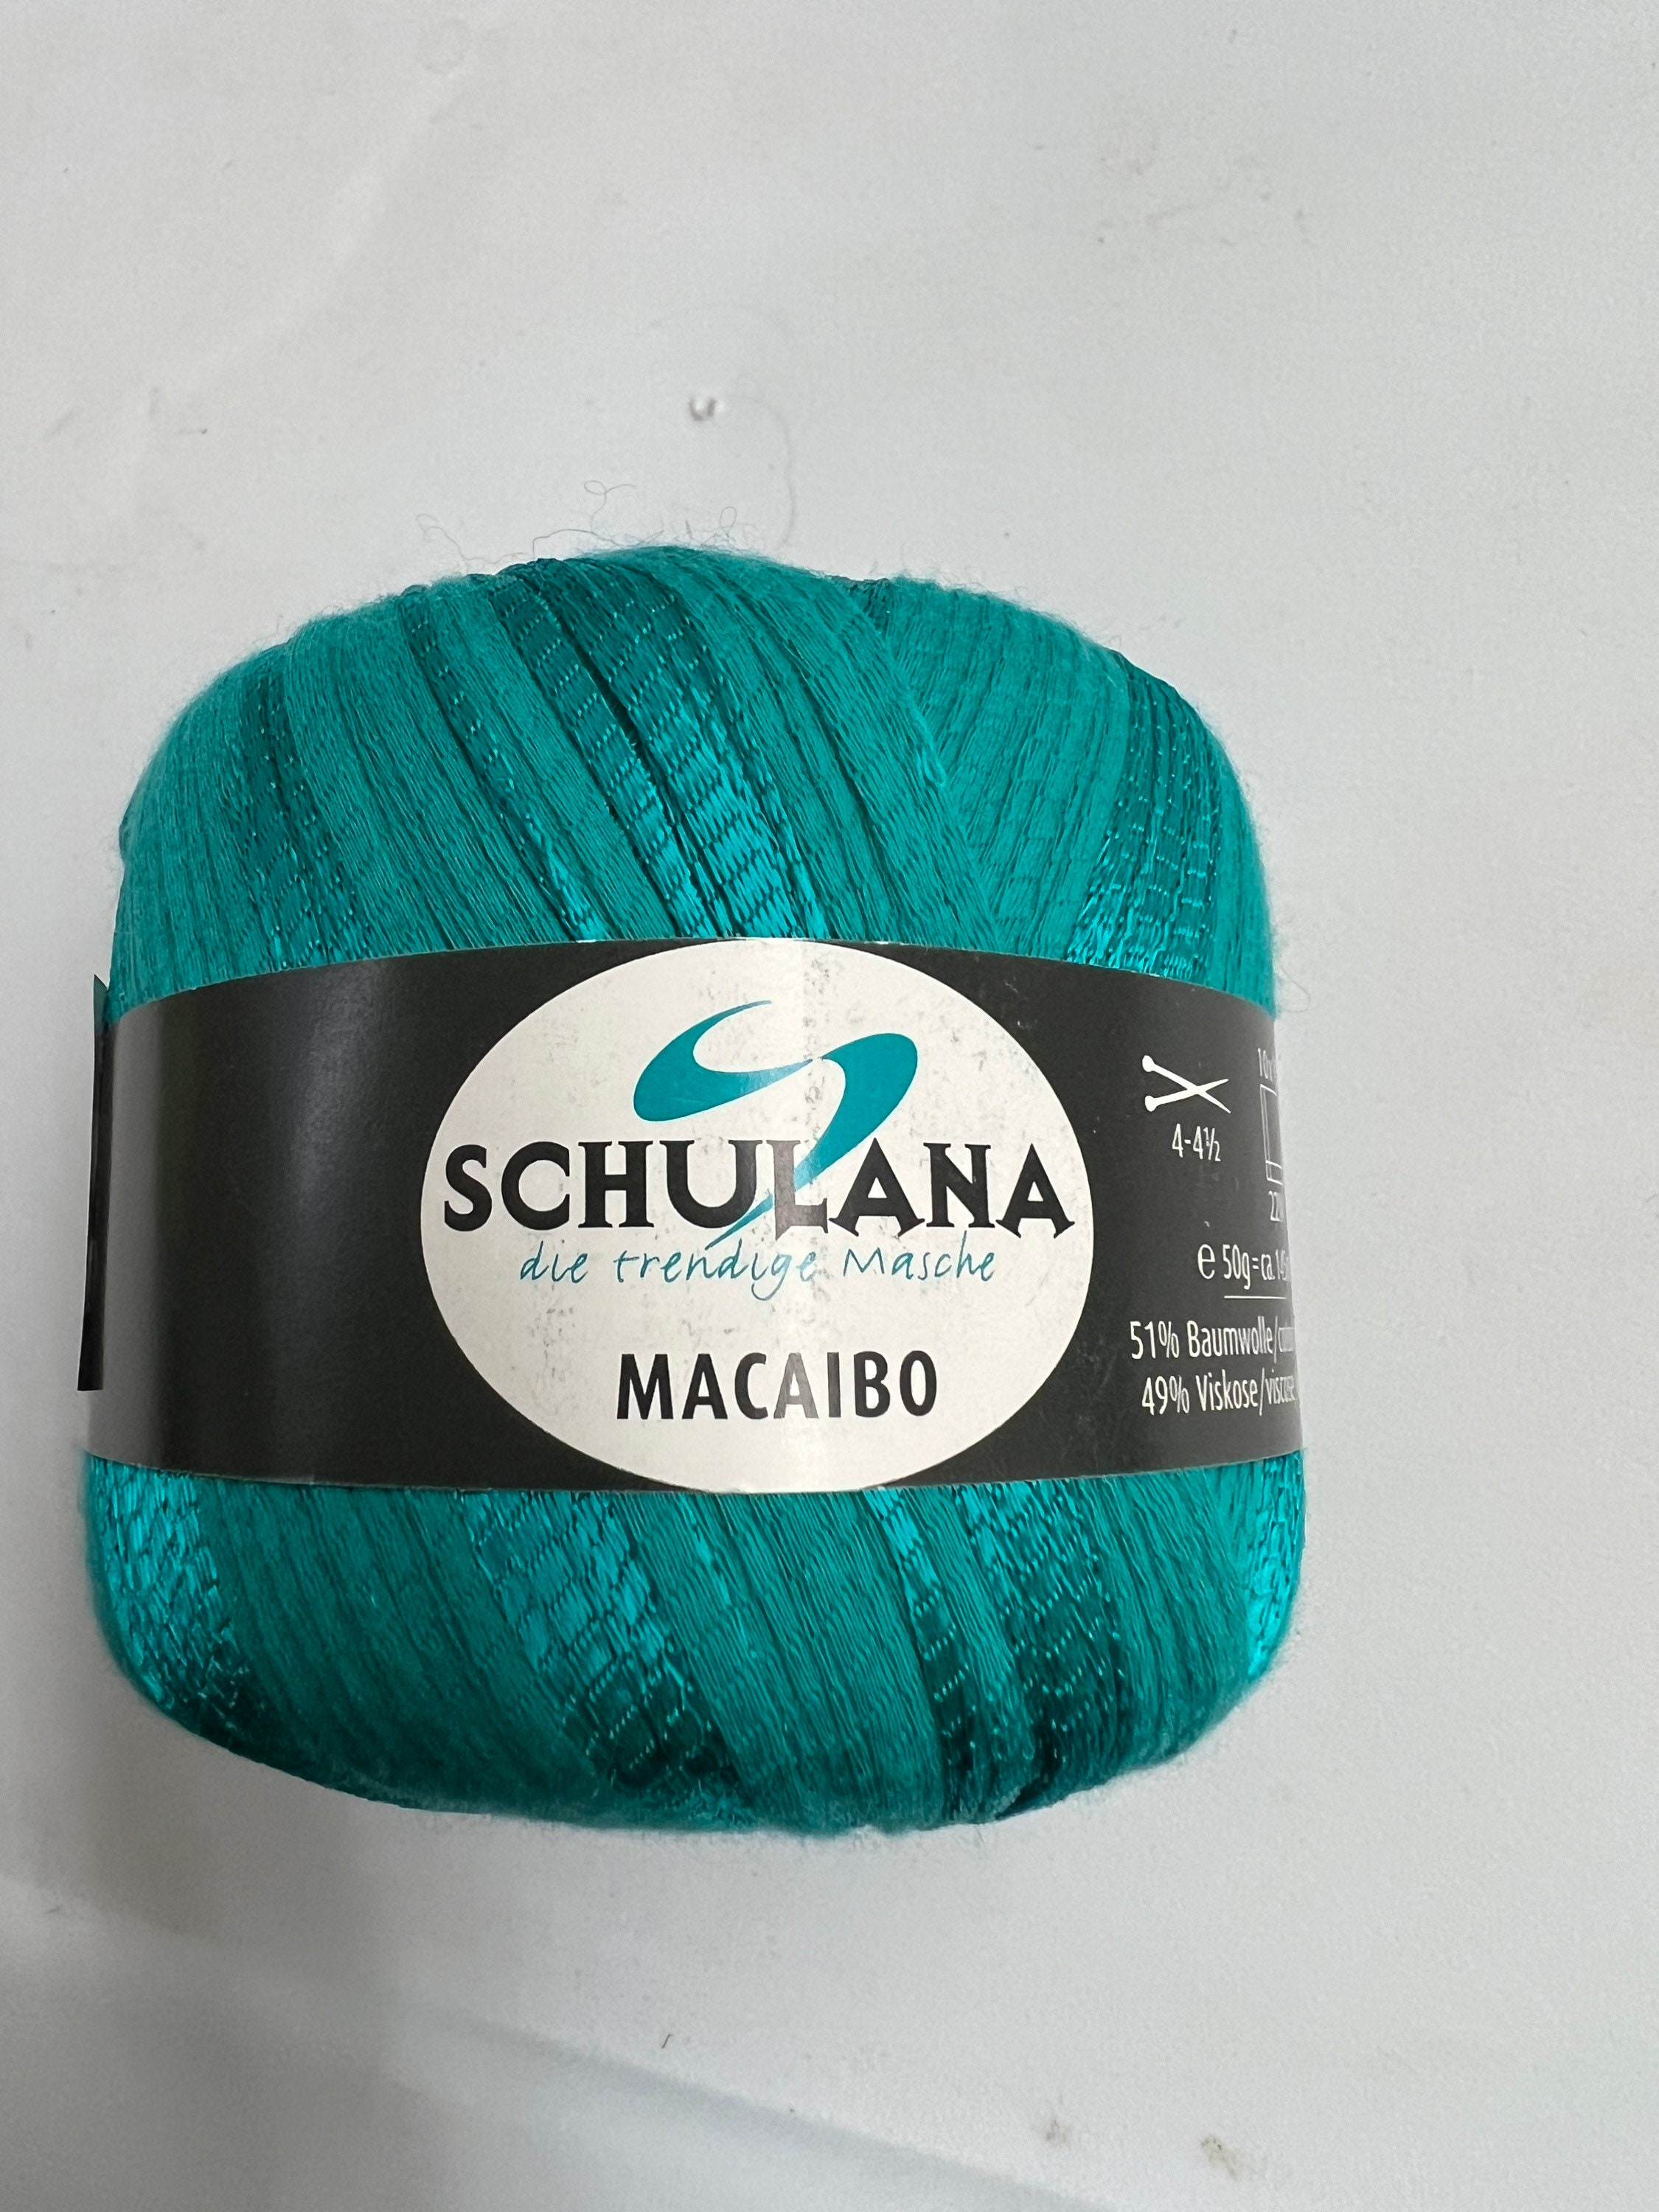 Macaibo by Schulana - Etsy